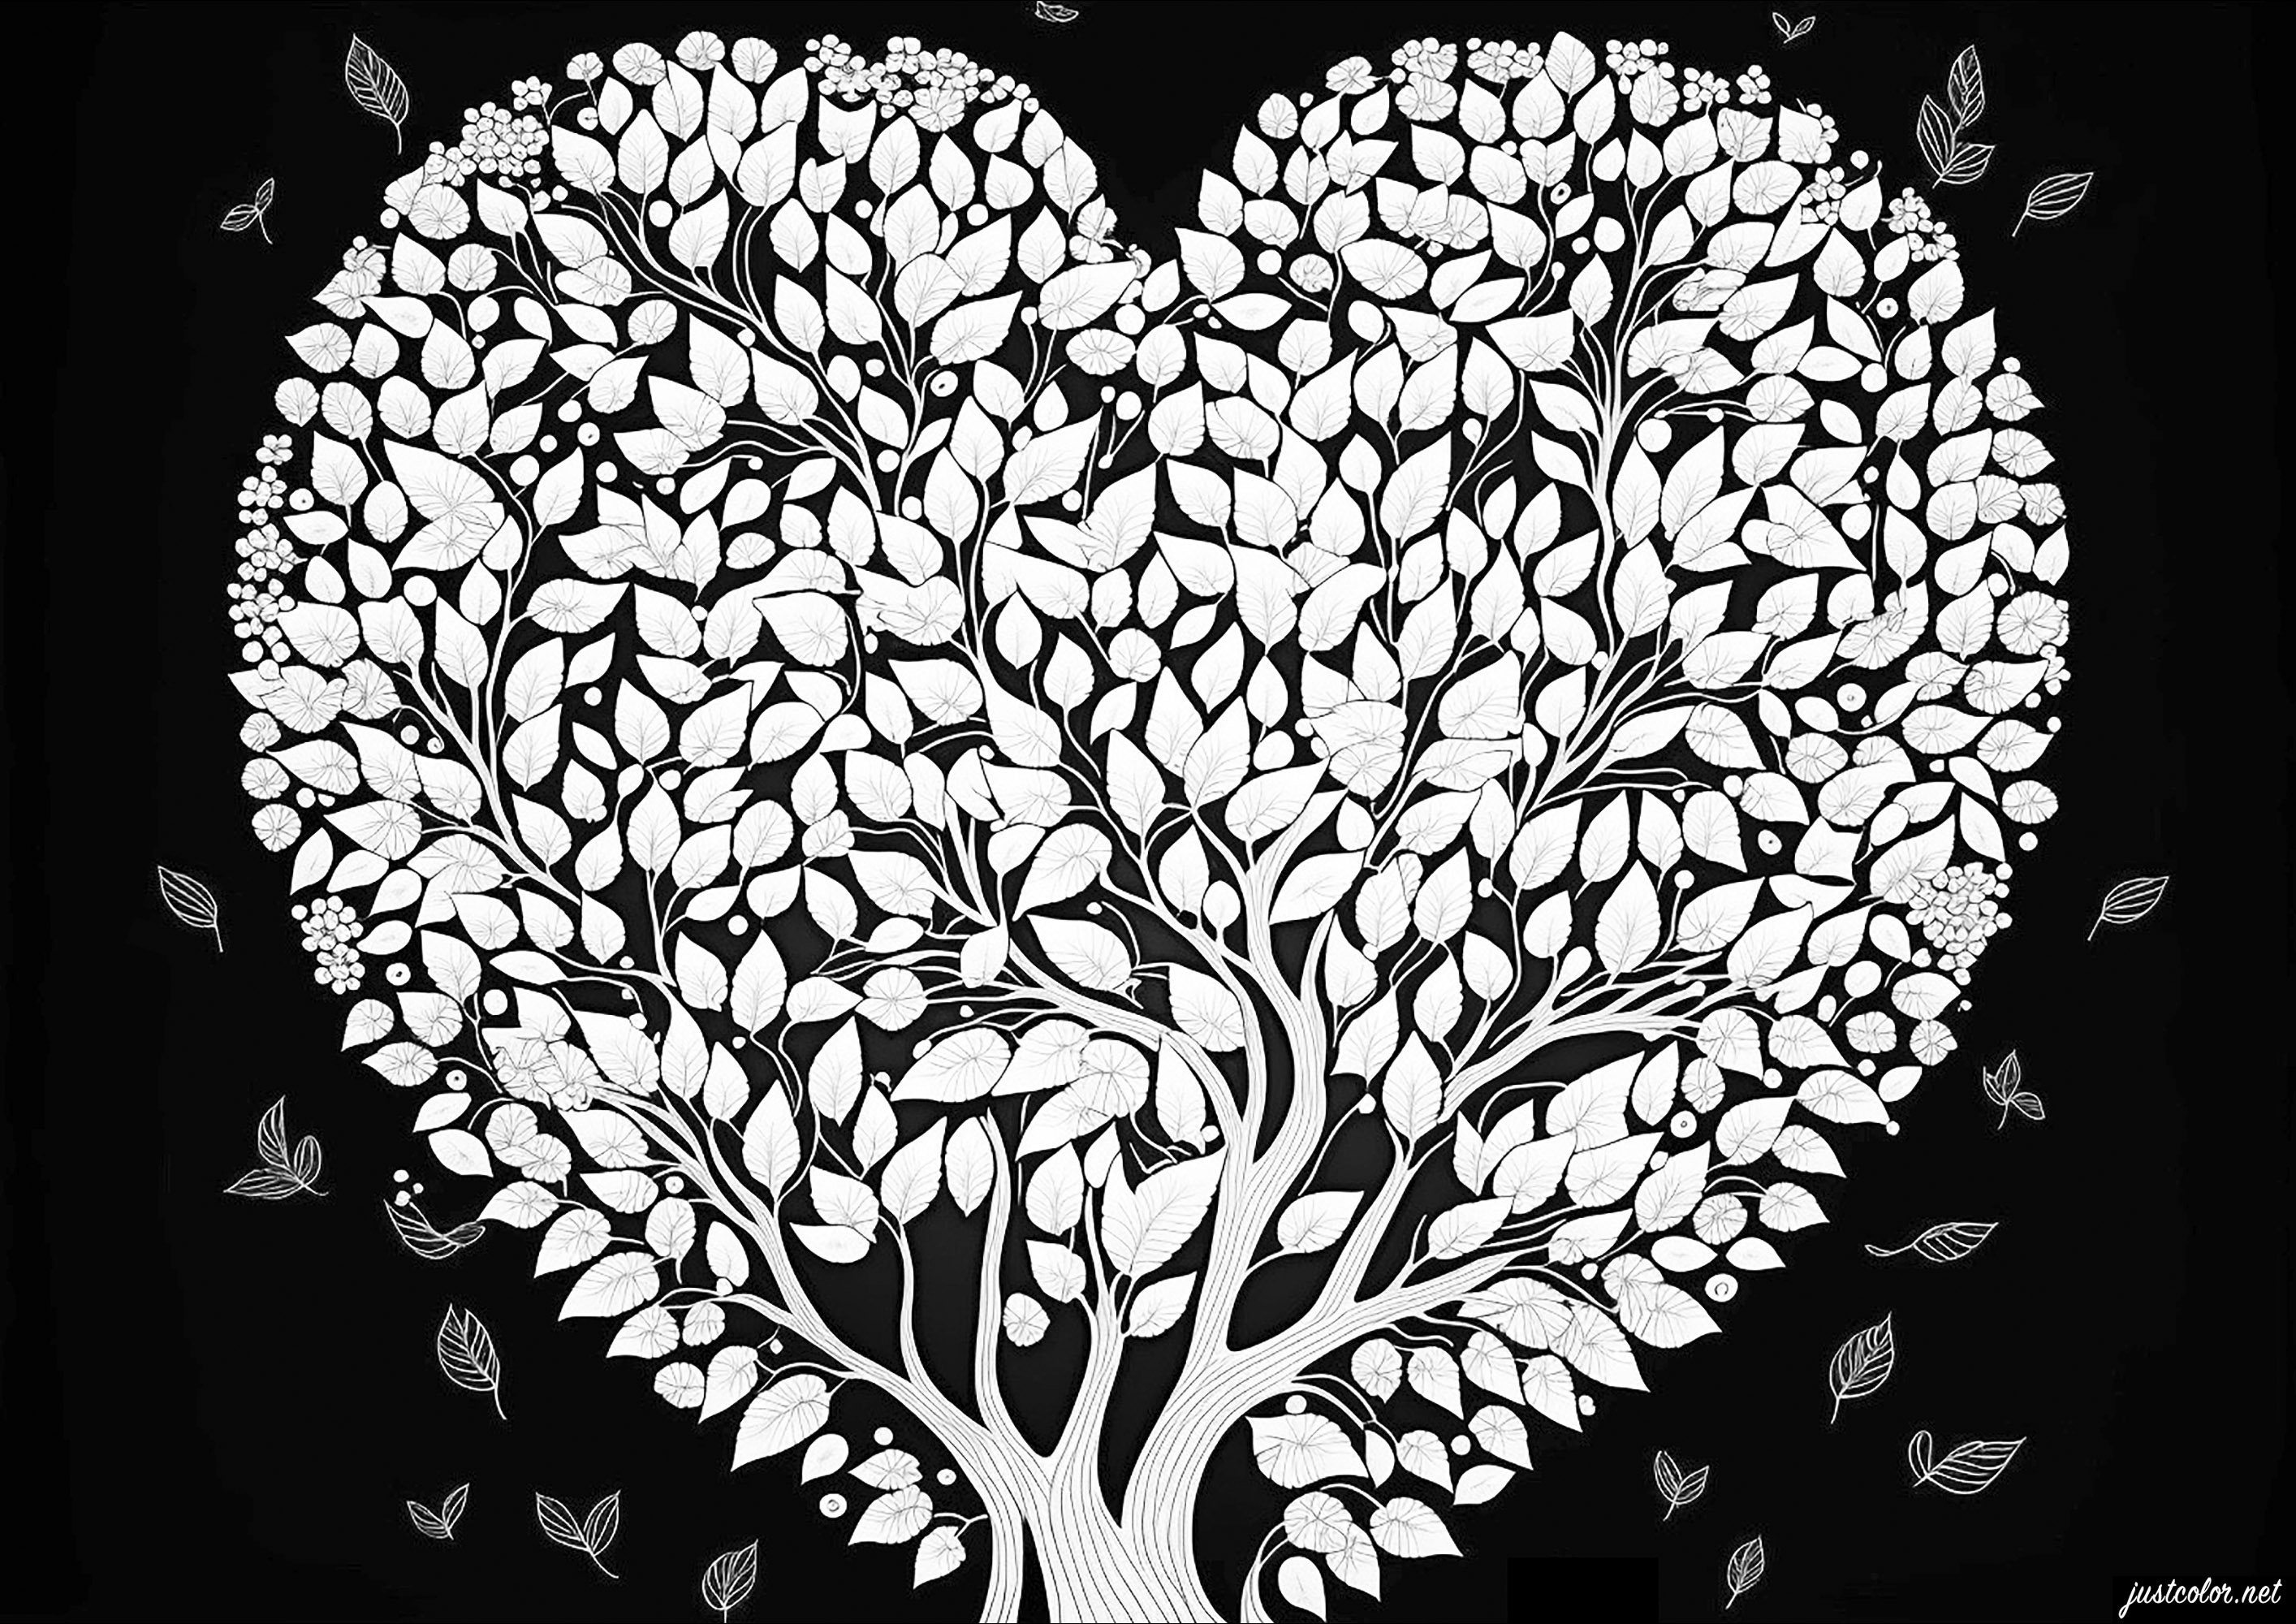 Albero dell'amore su sfondo nero. Colorate questo magnifico albero a forma di cuore e i suoi numerosi ed eleganti fiori.